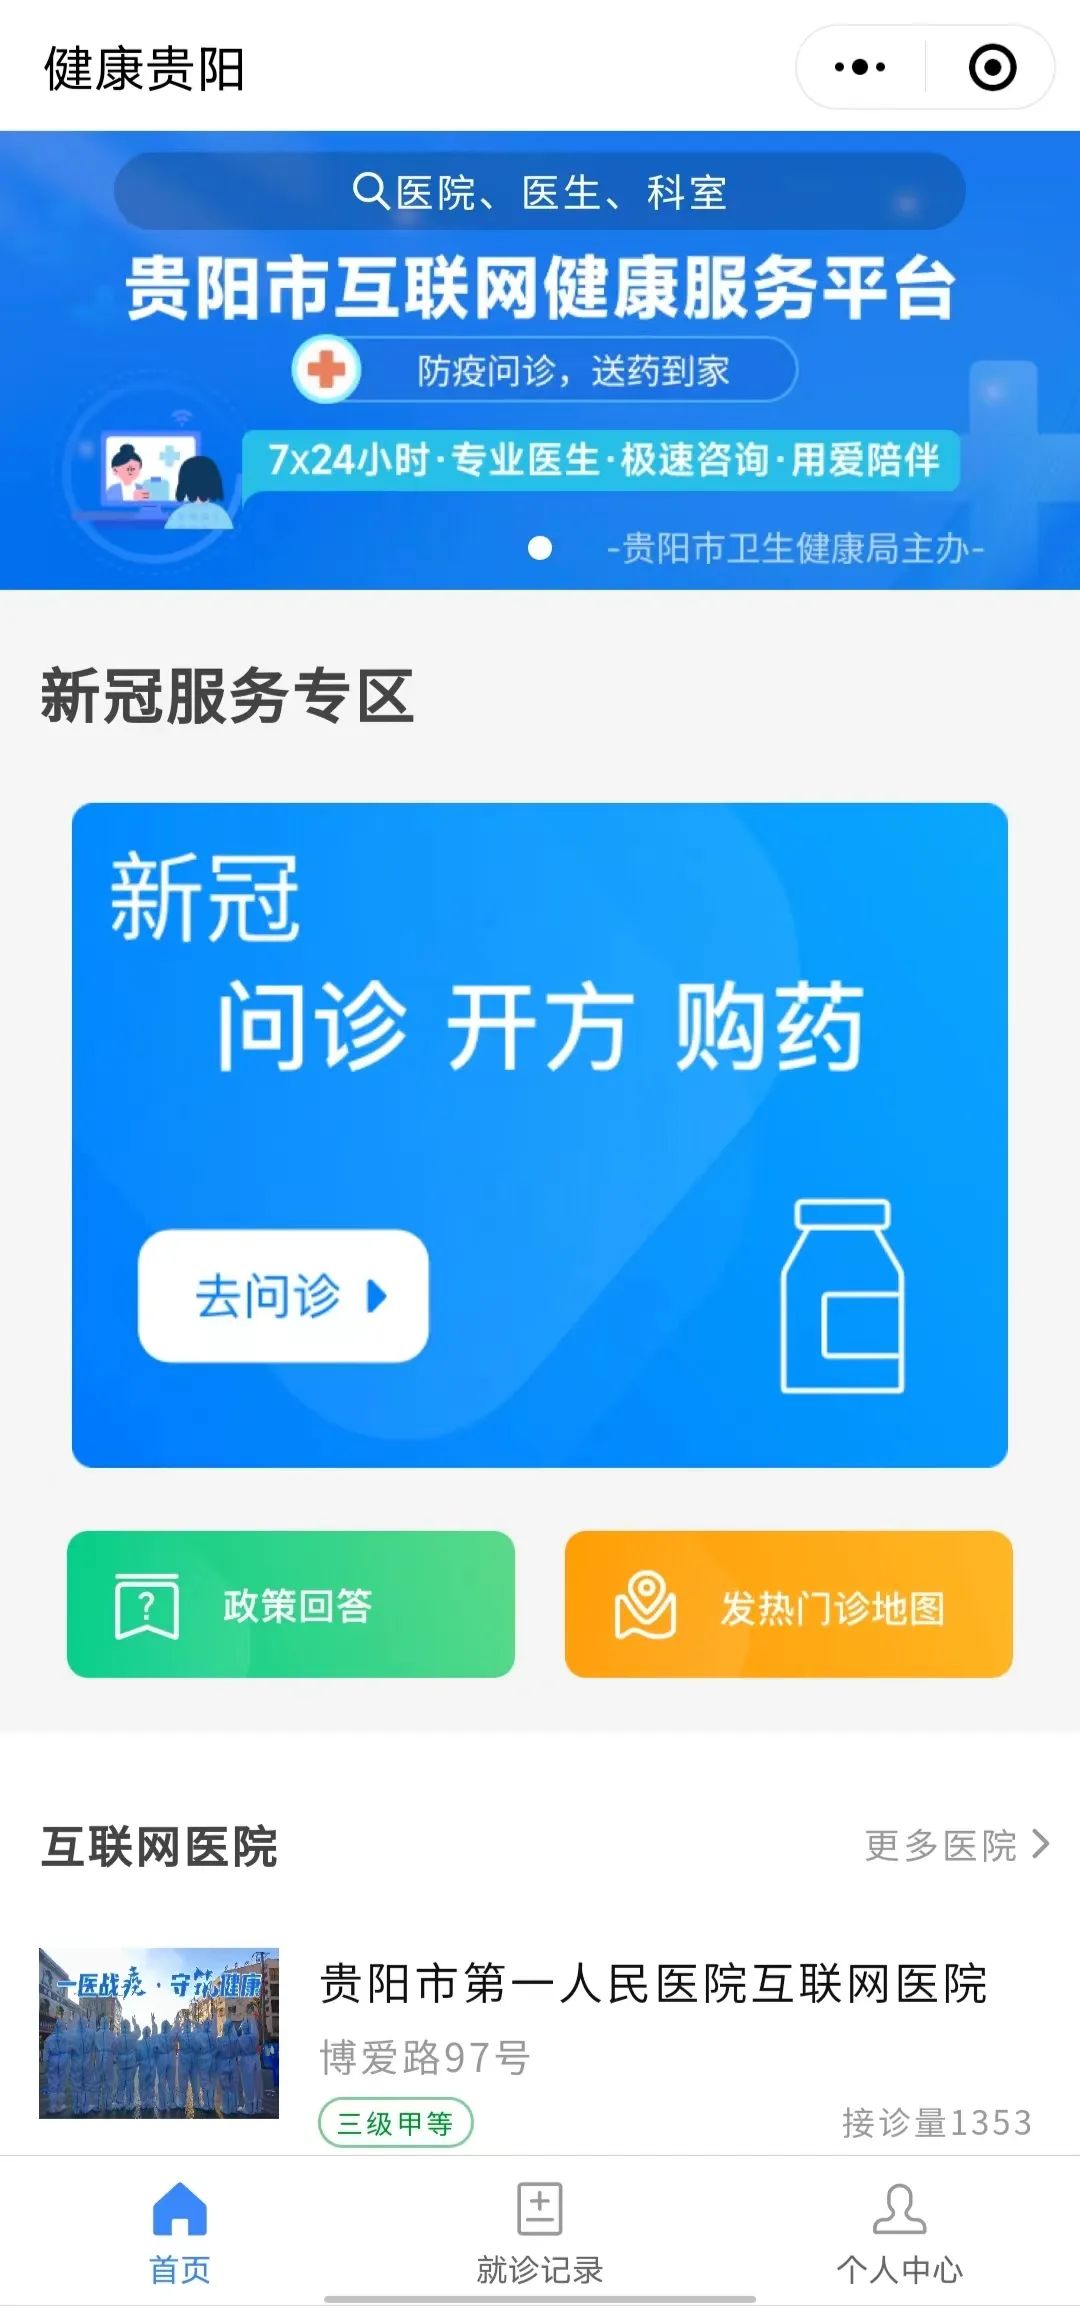 贵阳市互联网健康服务平台“新冠服务专区”功能再完善